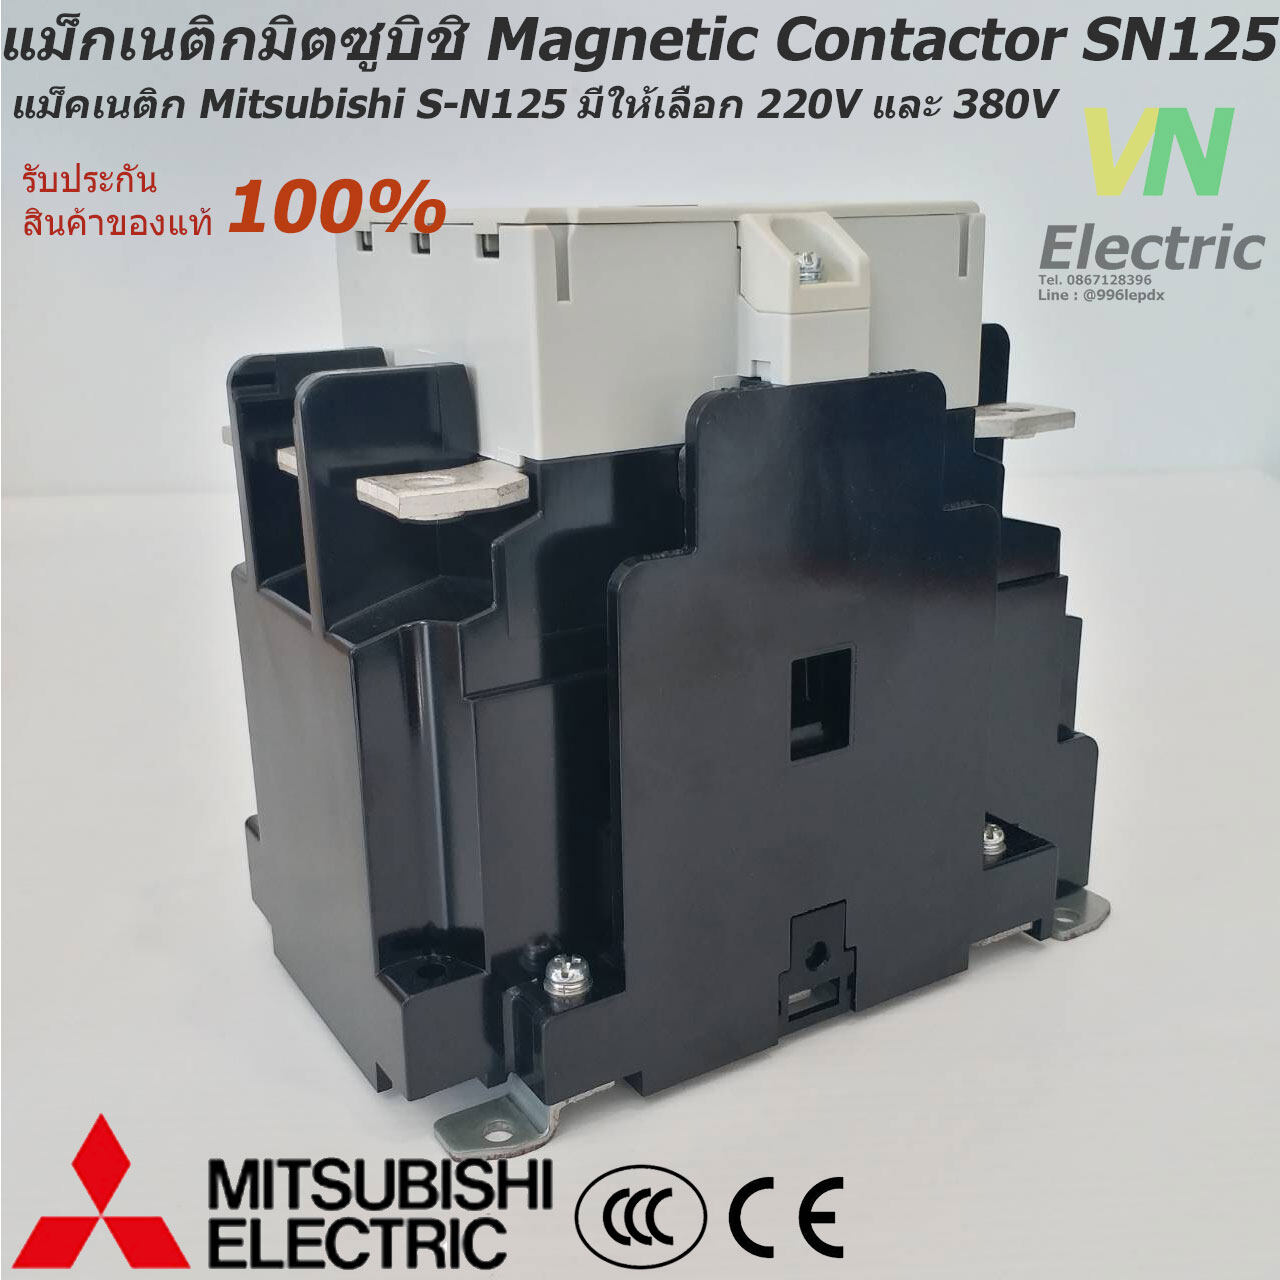 แม็กเนติกมิตซูบิชิ MITSUBISHI Magnetic Contactor S-N 125 220V-380V แม็คเนติก  ตัวเลือก คอยล์ 220 V.